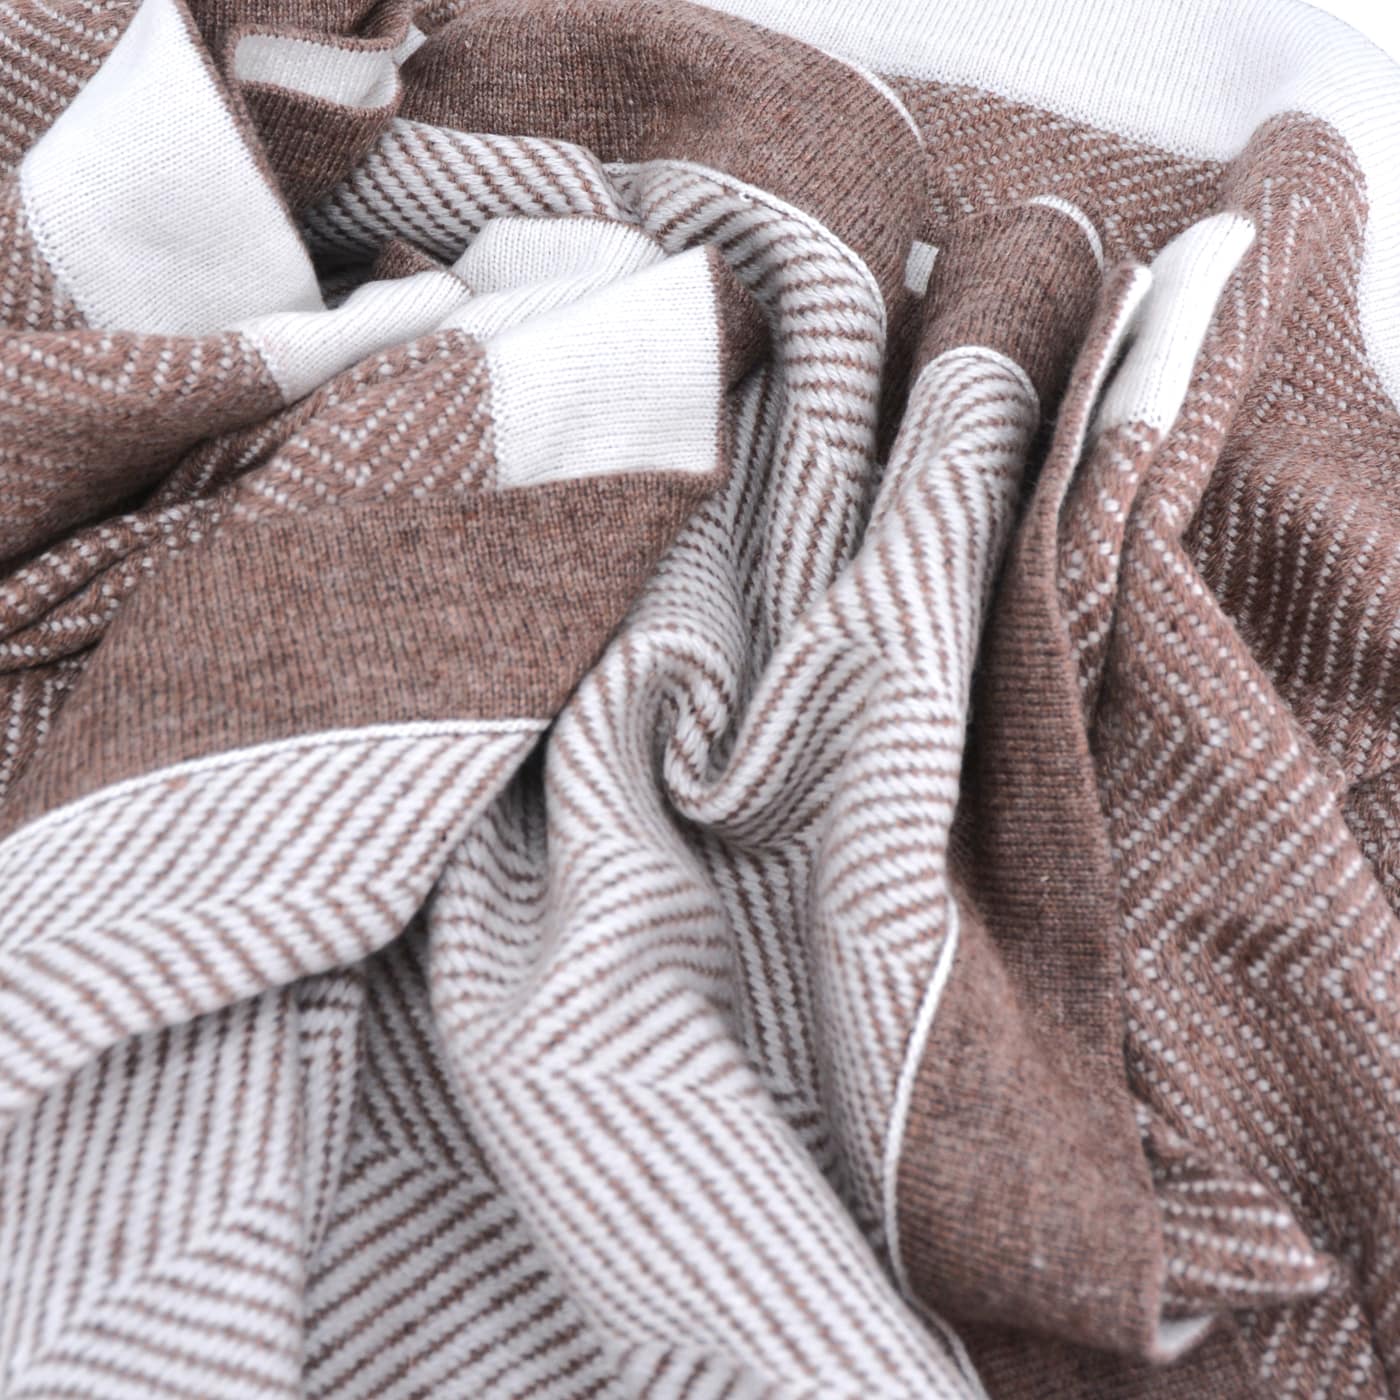 Wollen deken in bruin en ivoor - Grote visgraat - 130 x 200 cm